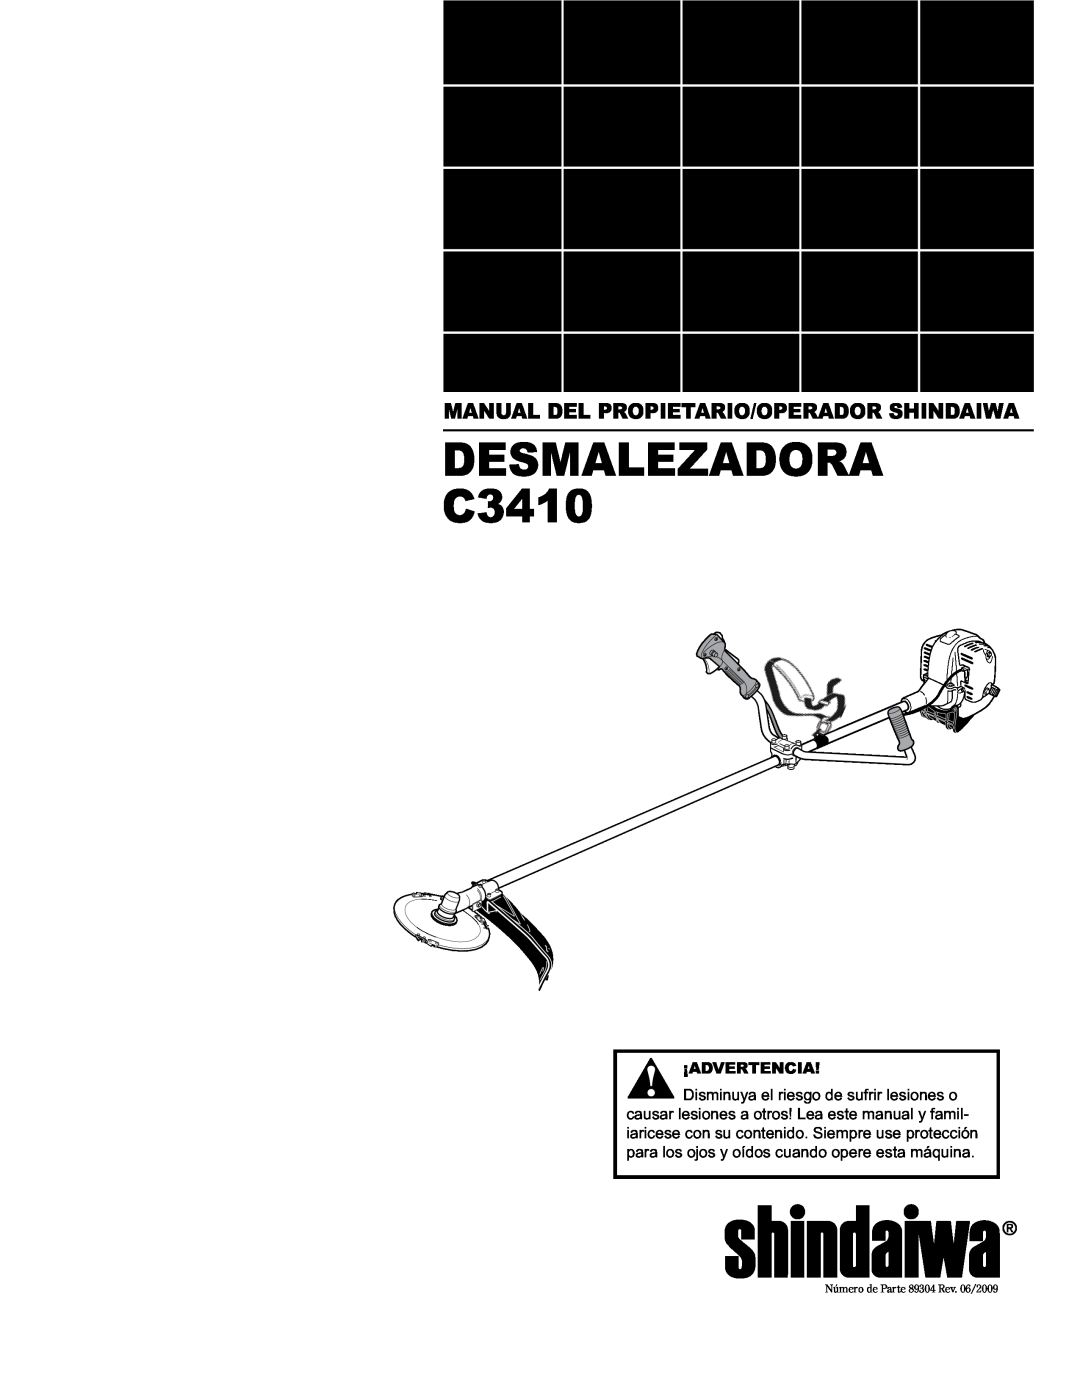 Shindaiwa C3410/EVC, 89304 manual Manual Del Propietario/Operador Shindaiwa, DESMALEZADORA C3410, ¡Advertencia 